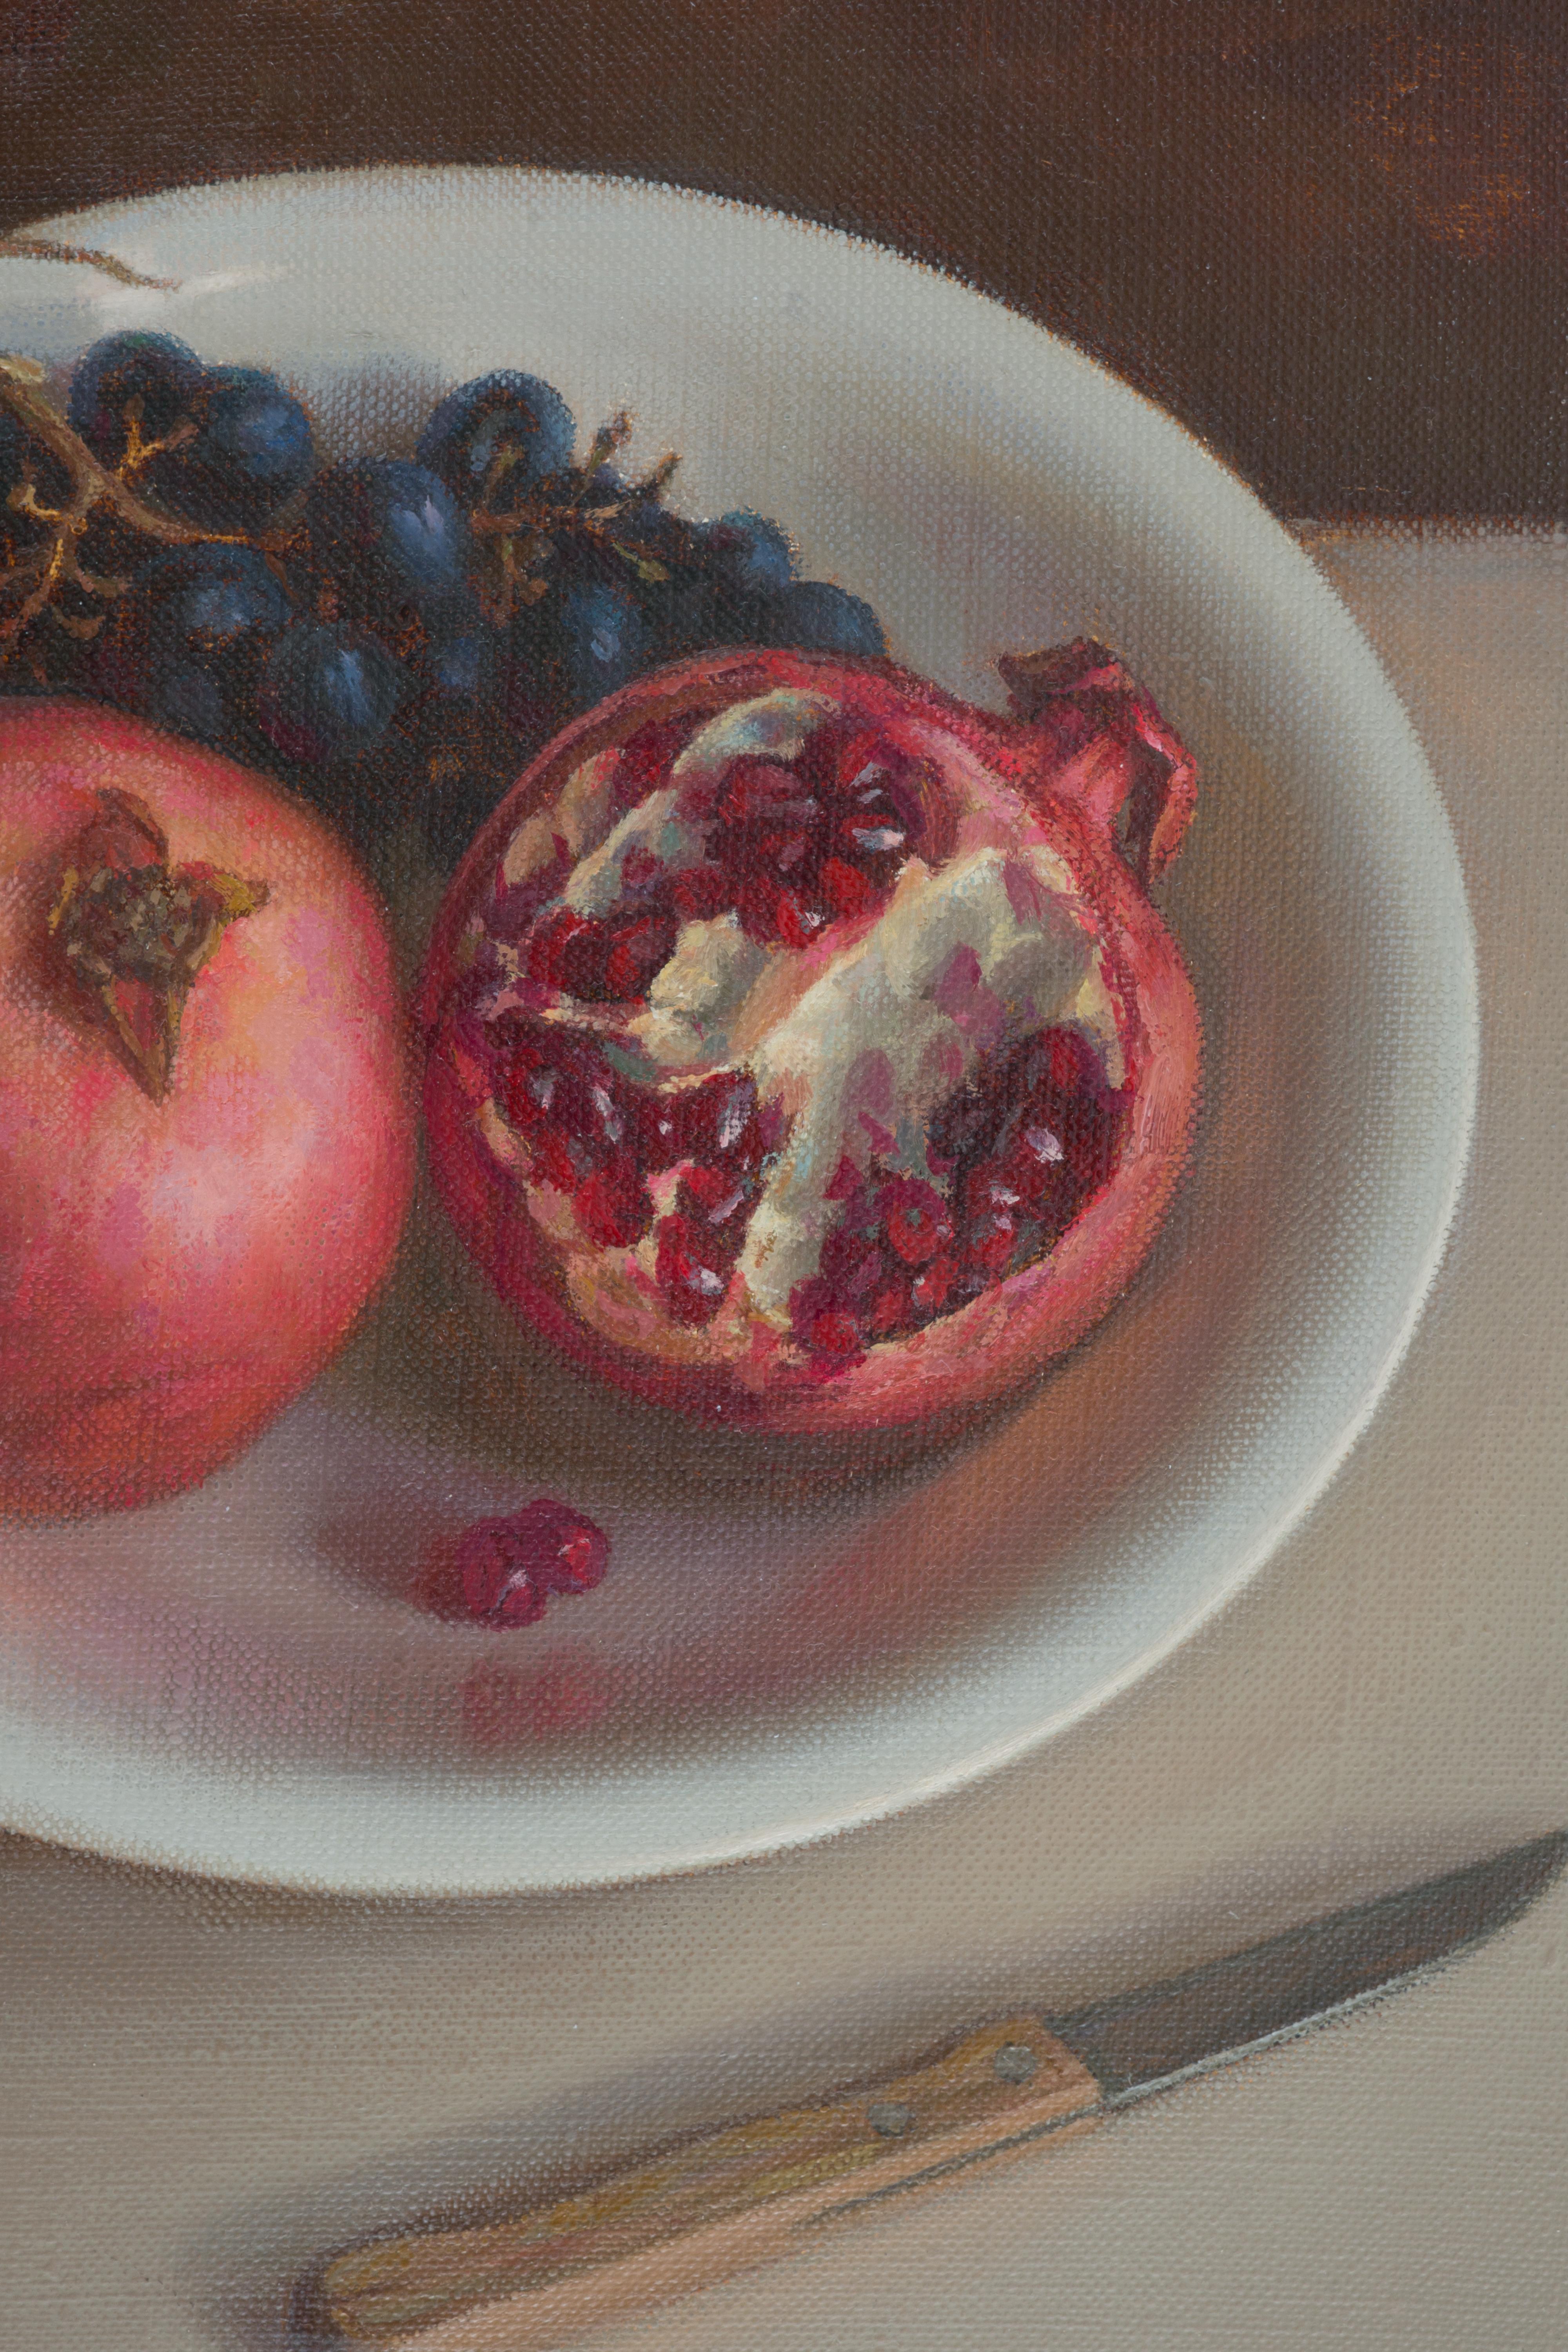 Still life with pomegranates - Painting by Irina Trushkova